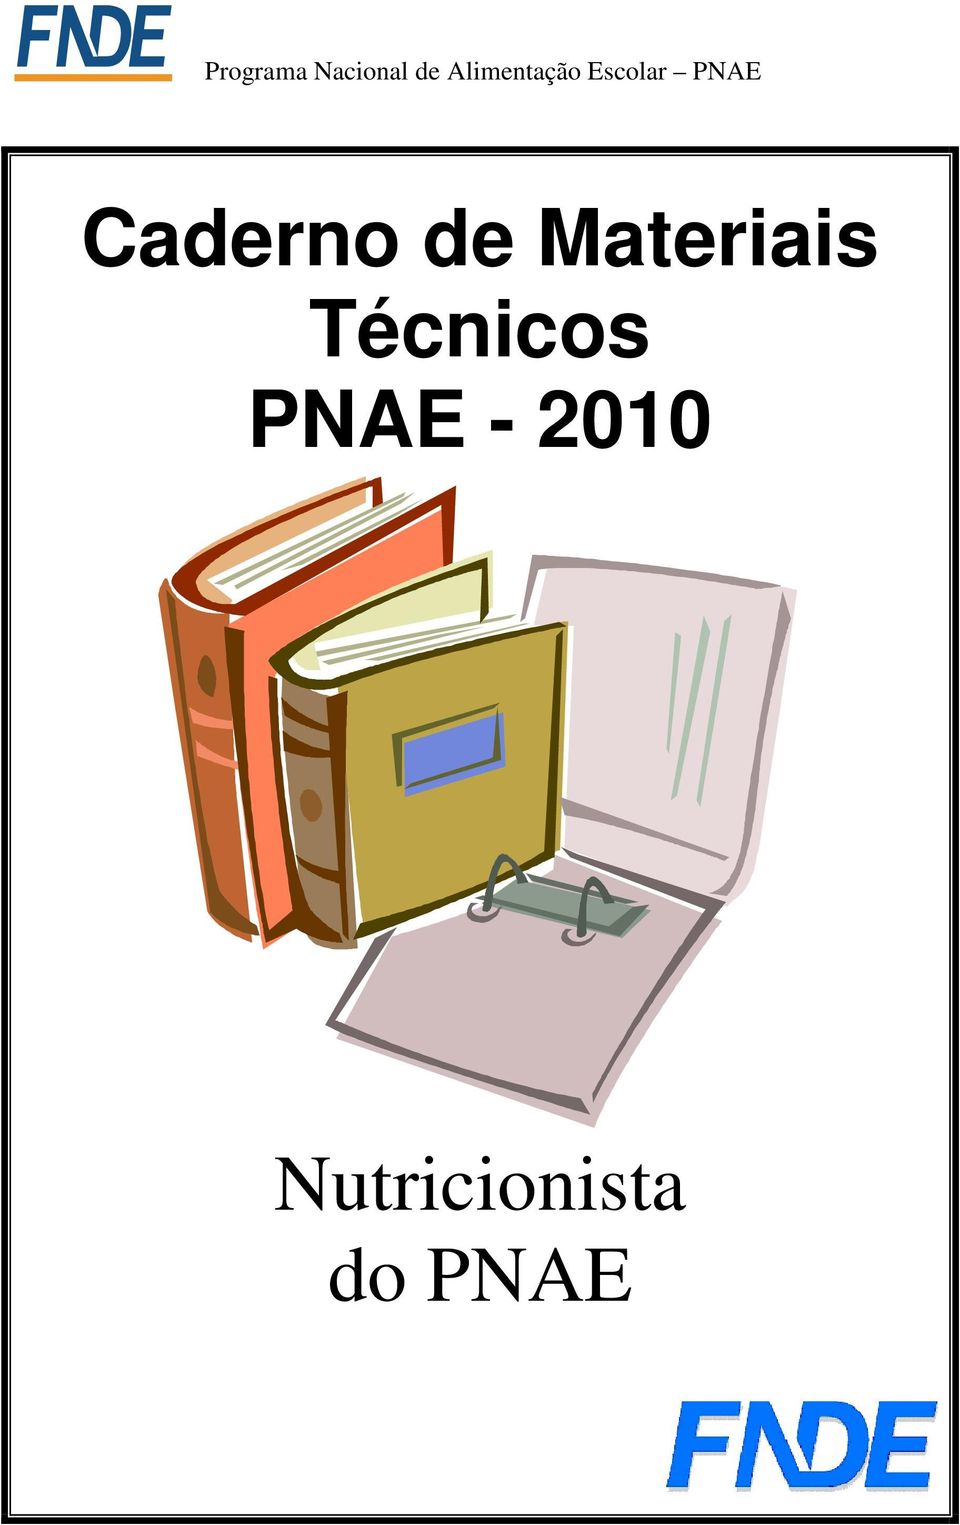 Técnicos PNAE -